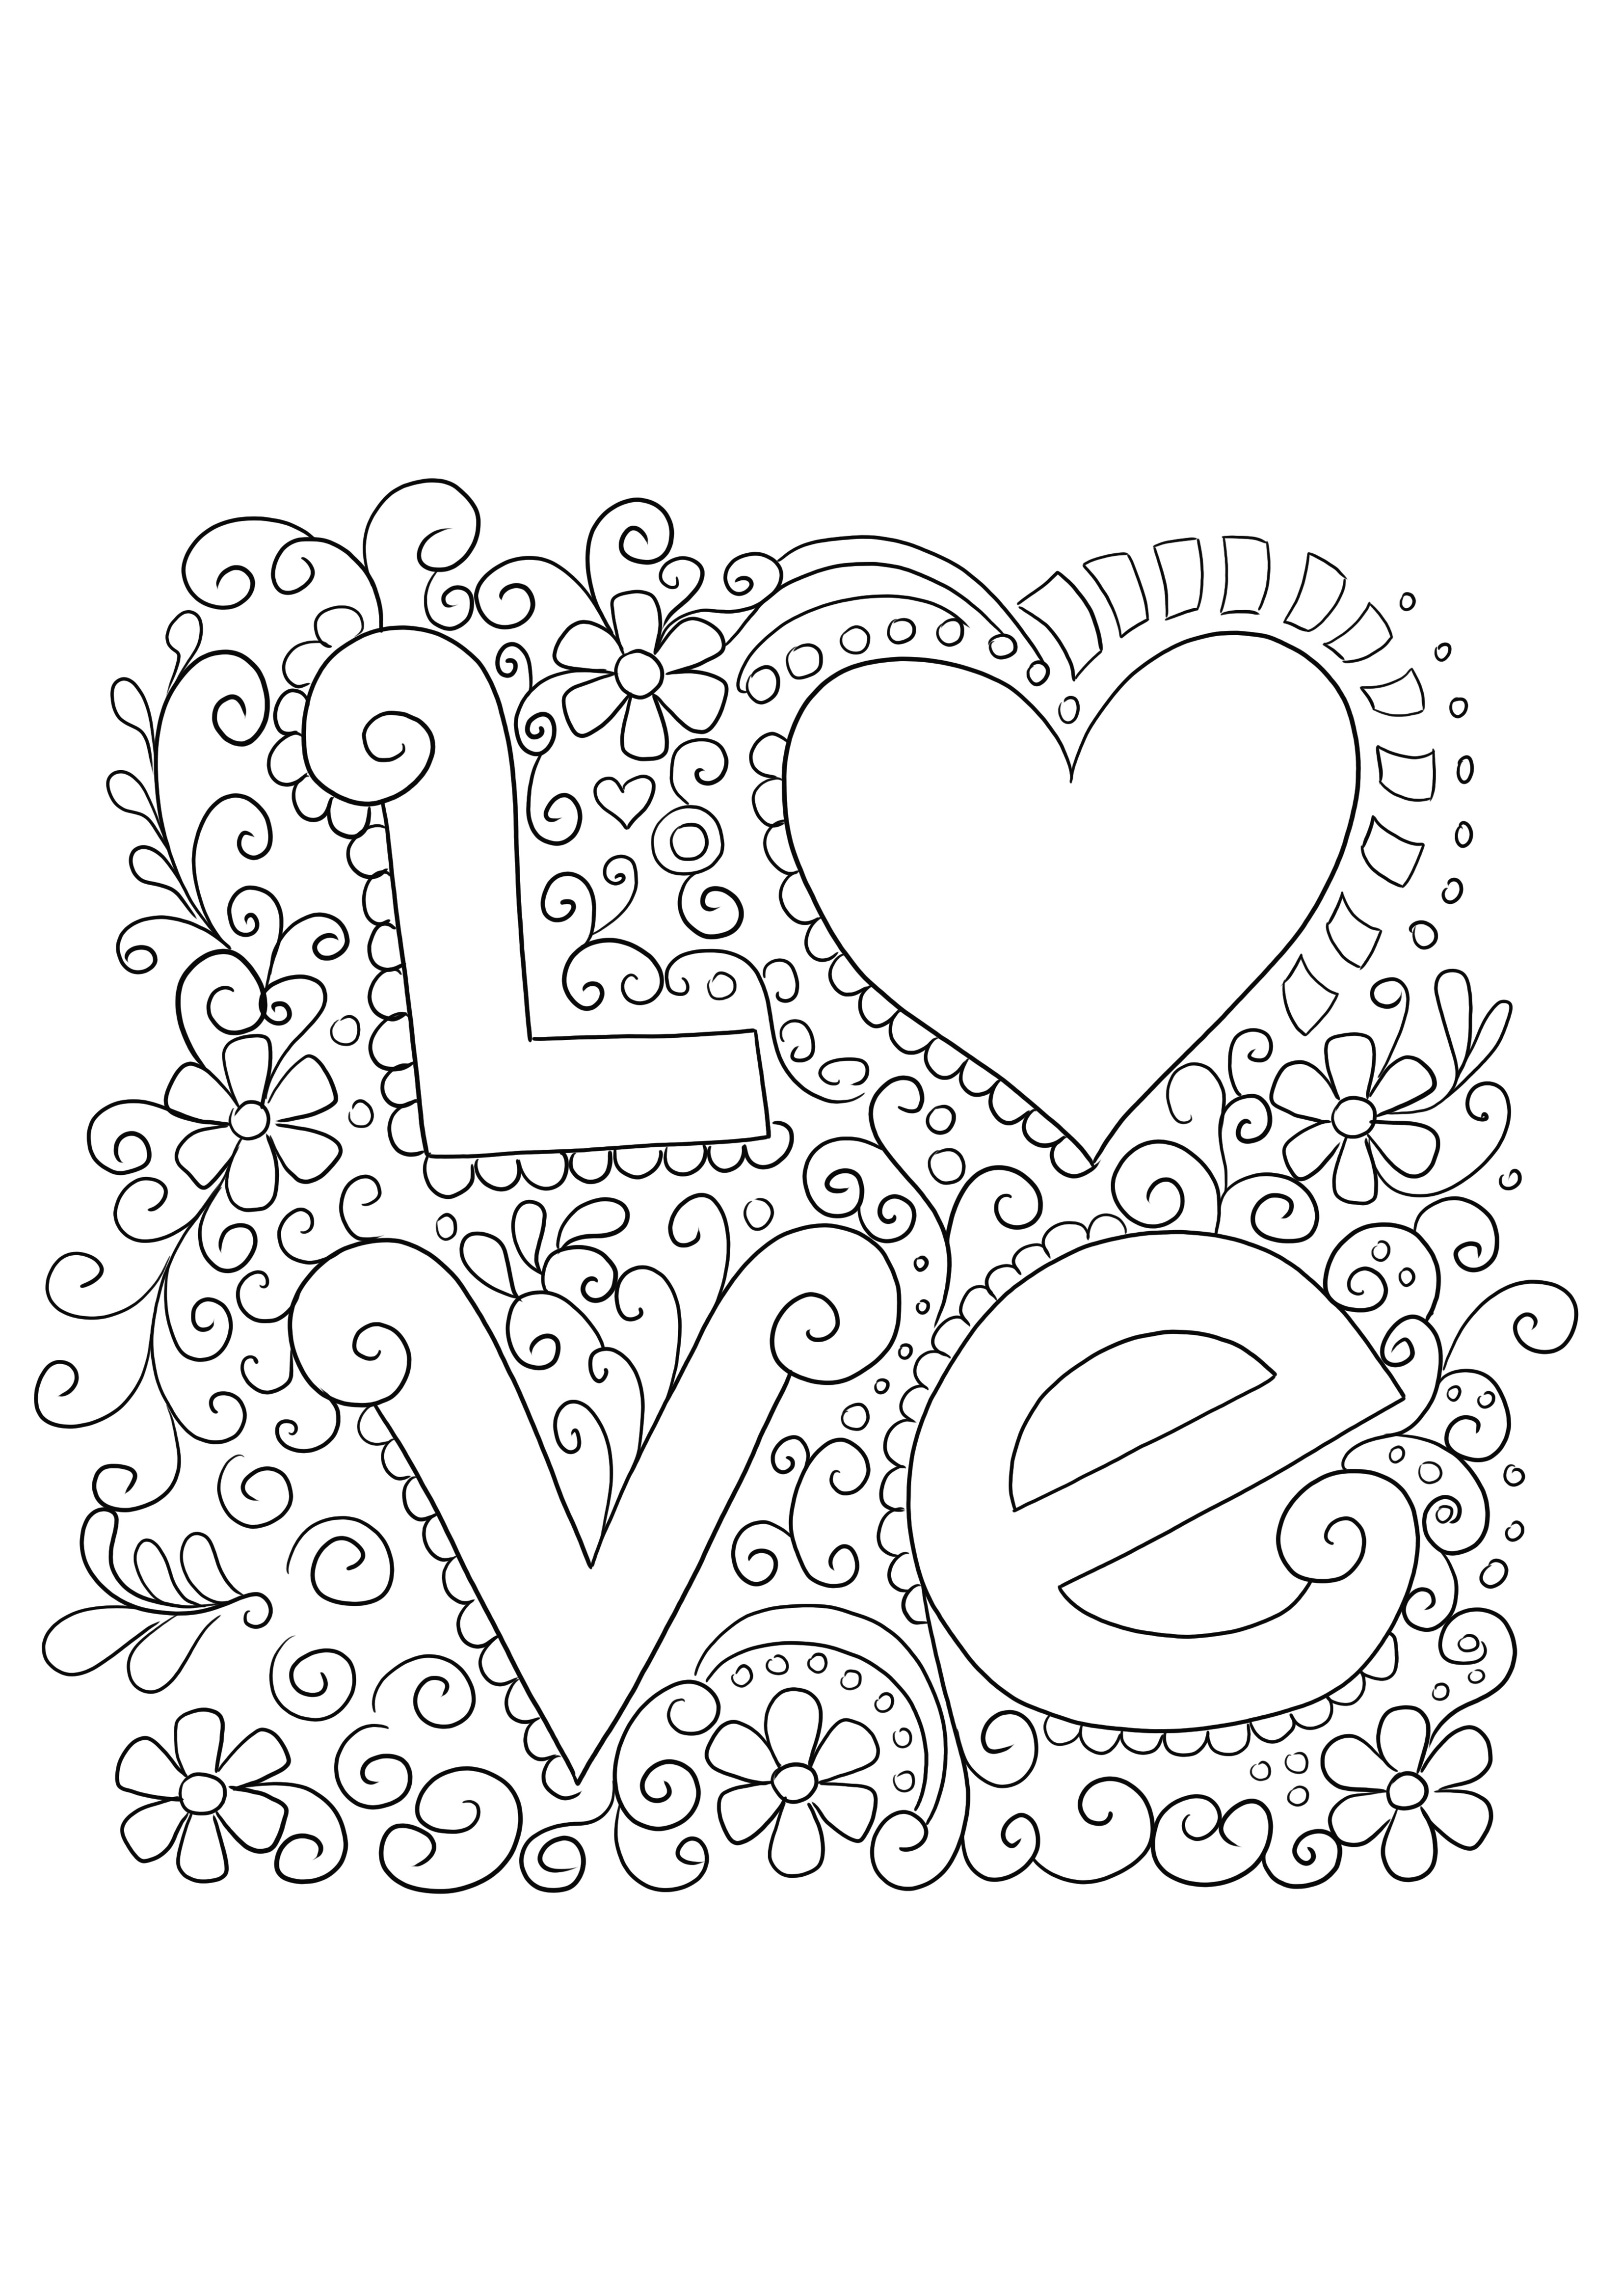 Tarjeta de Amor fácil y gratis para imprimir para colorear y celebrar el Día de los Enamorados